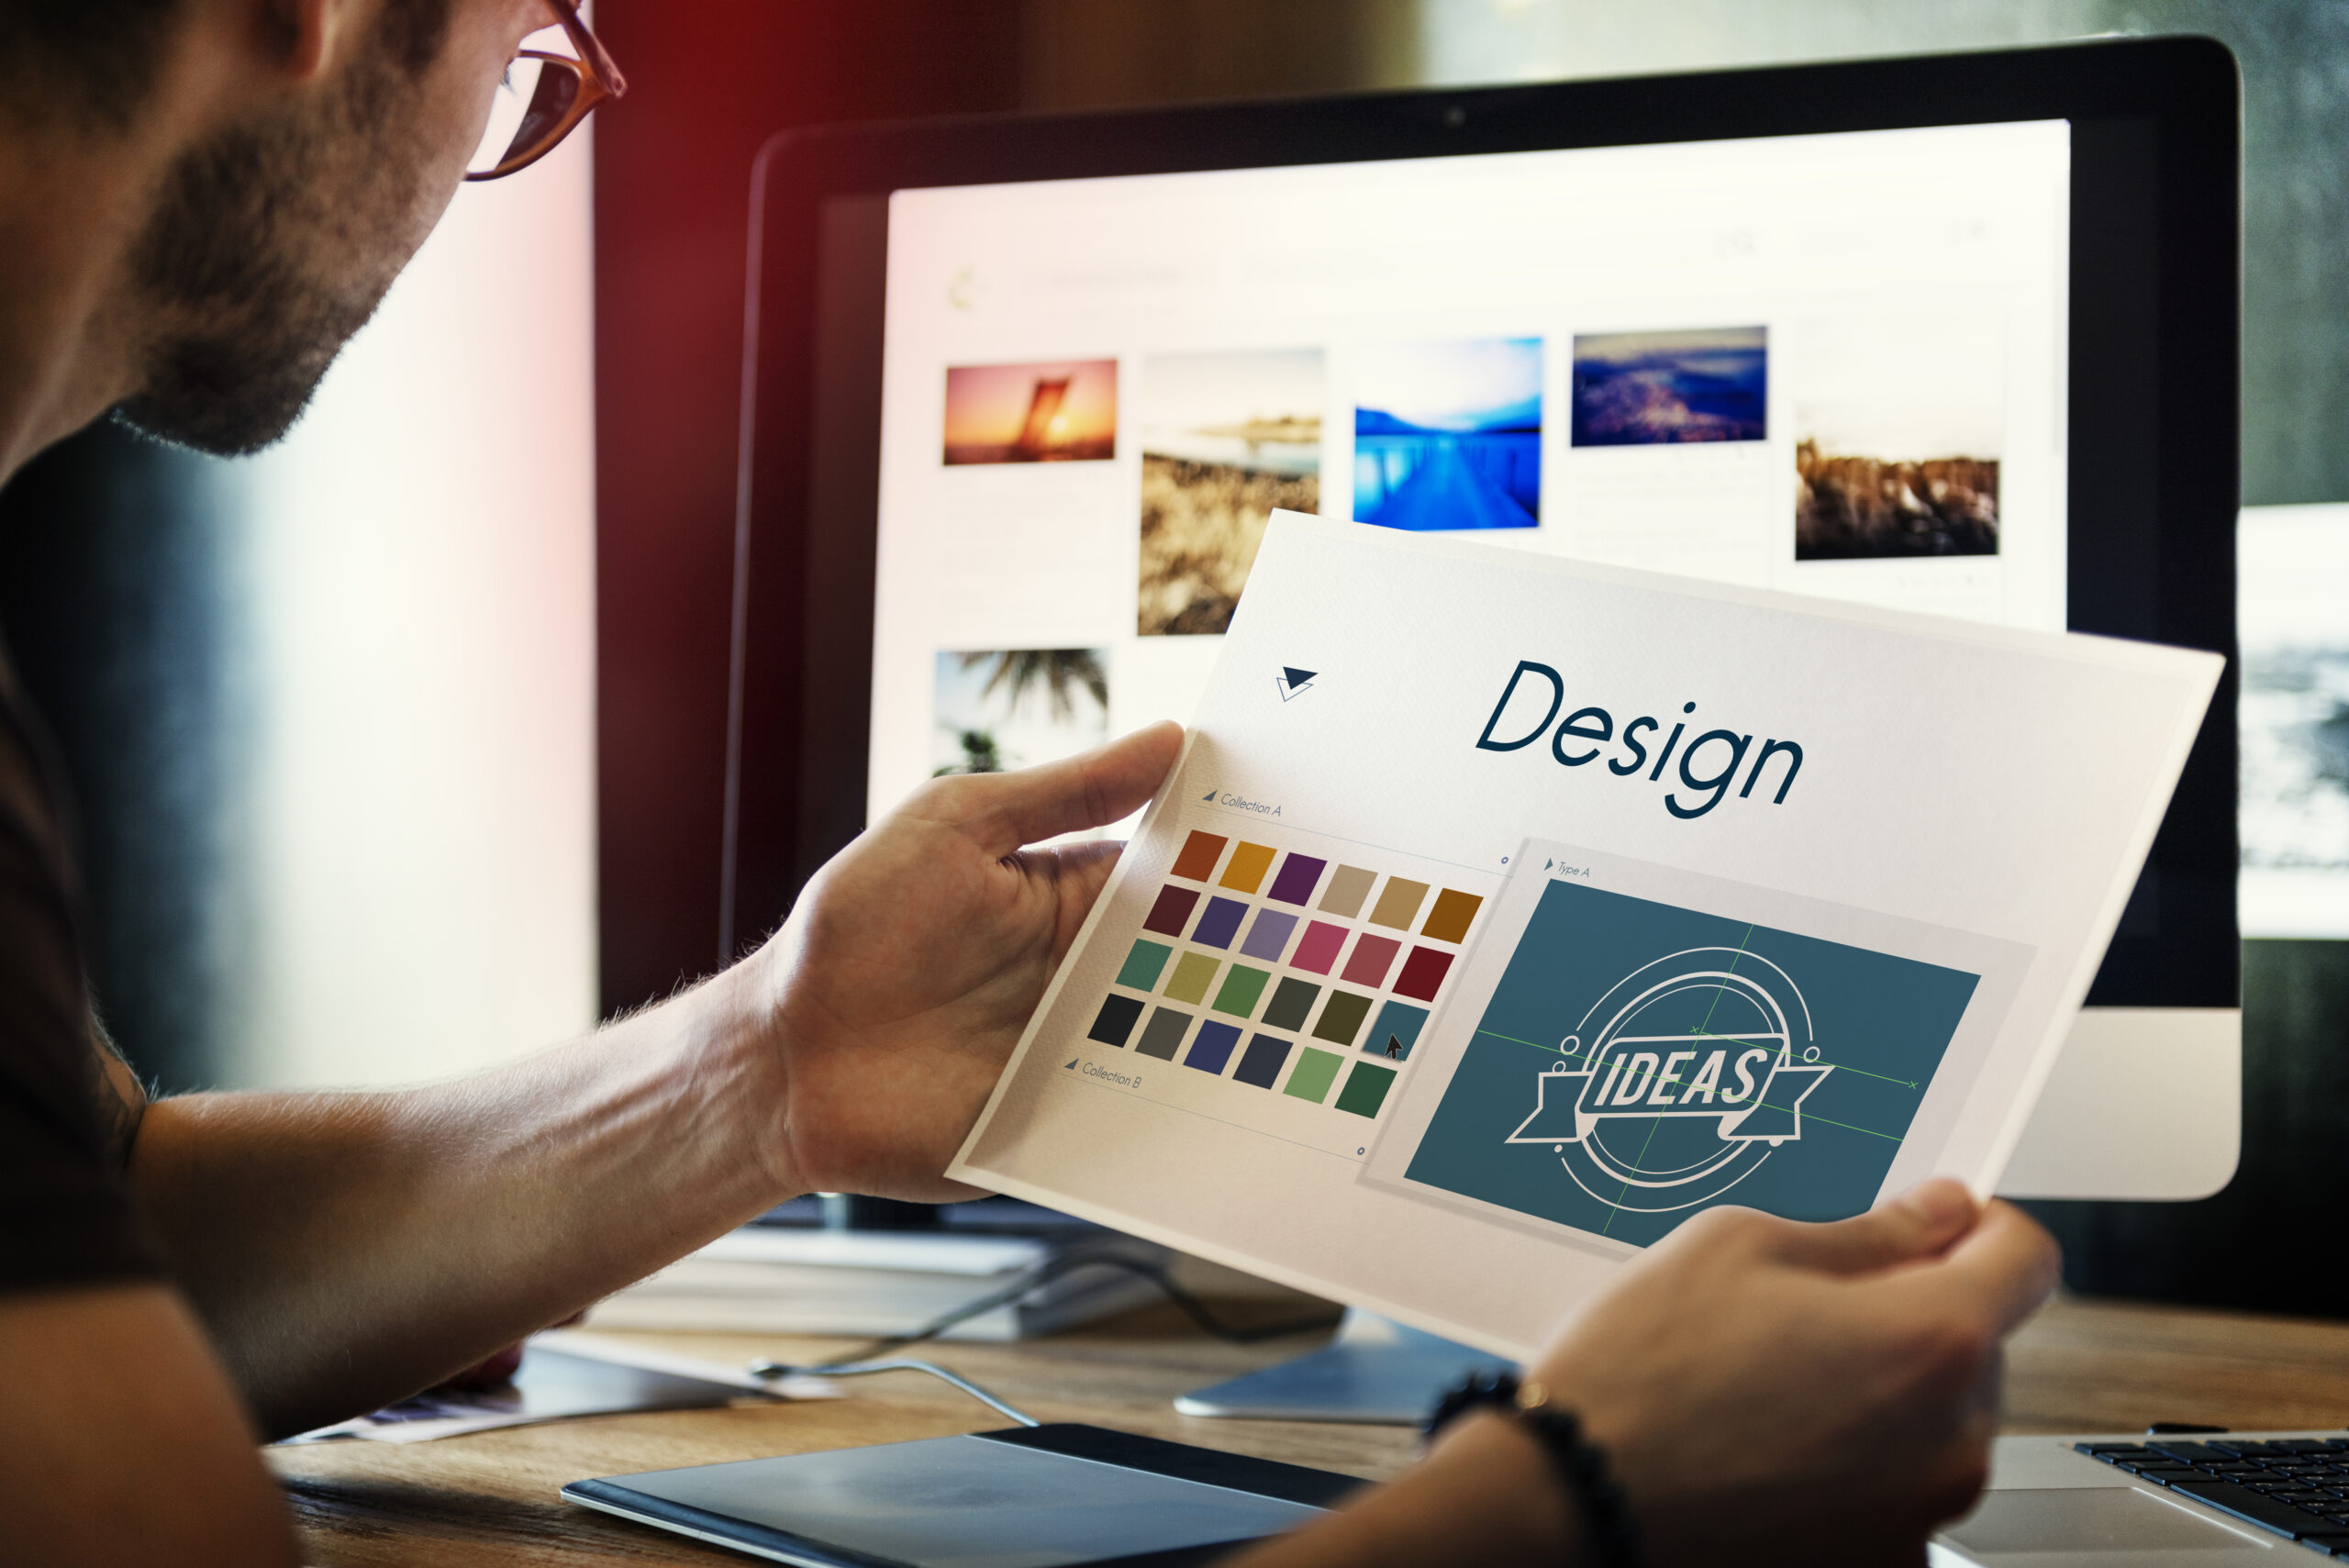 Webdesign, Medien und Design-Lösungen von Absar Webagentur bieten erstklassige Möglichkeiten, Ihr Unternehmen im digitalen Raum herausragend zu präsentieren.